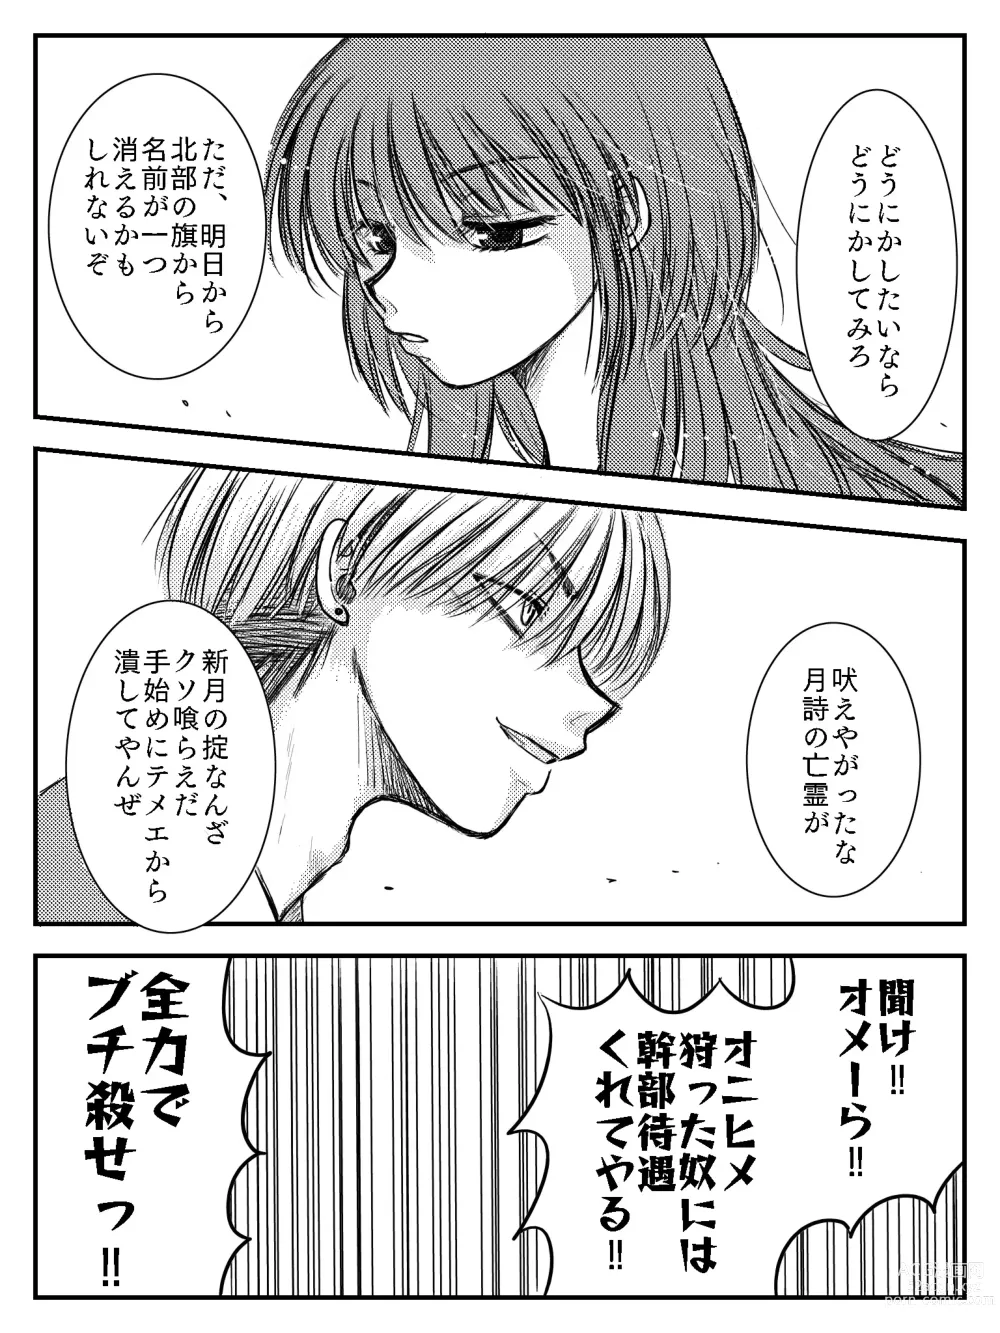 Page 83 of doujinshi LADIES NAVIGATION Episode 4